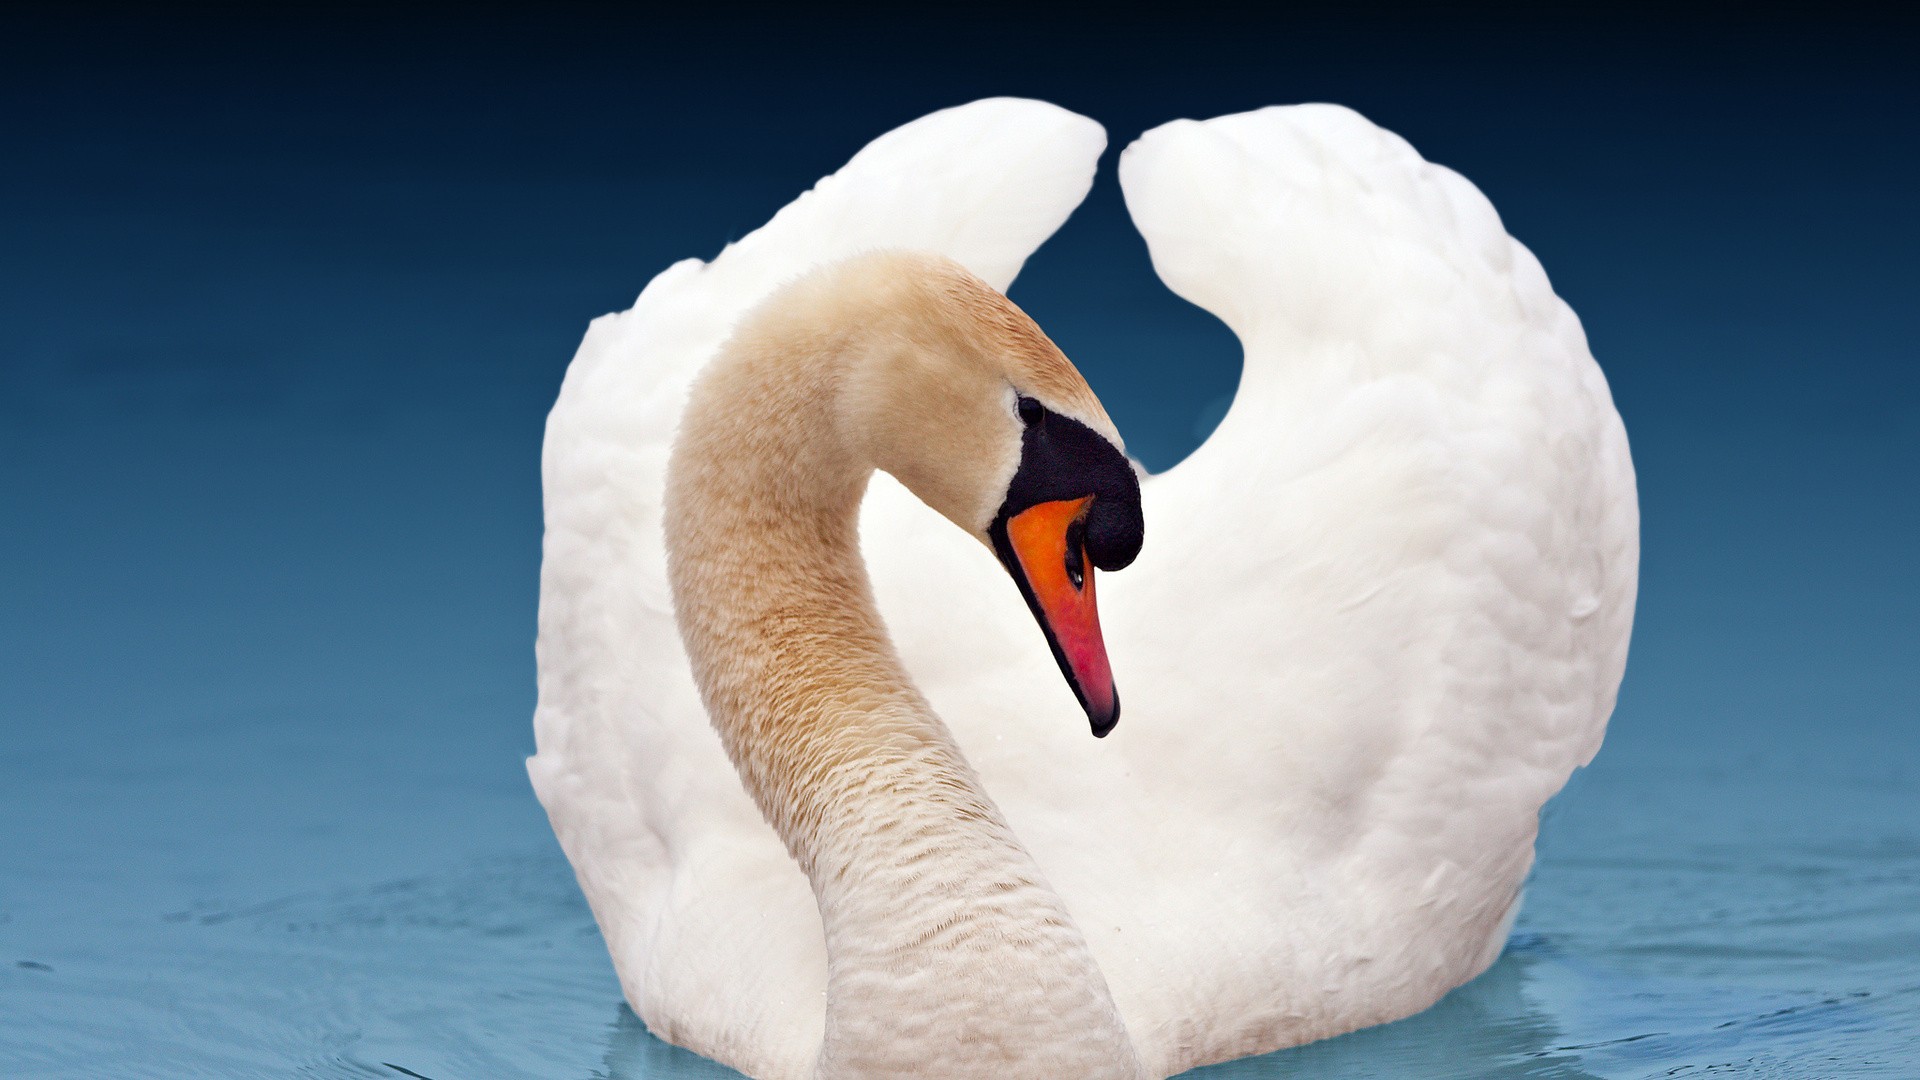 Swan wallpaper image hd